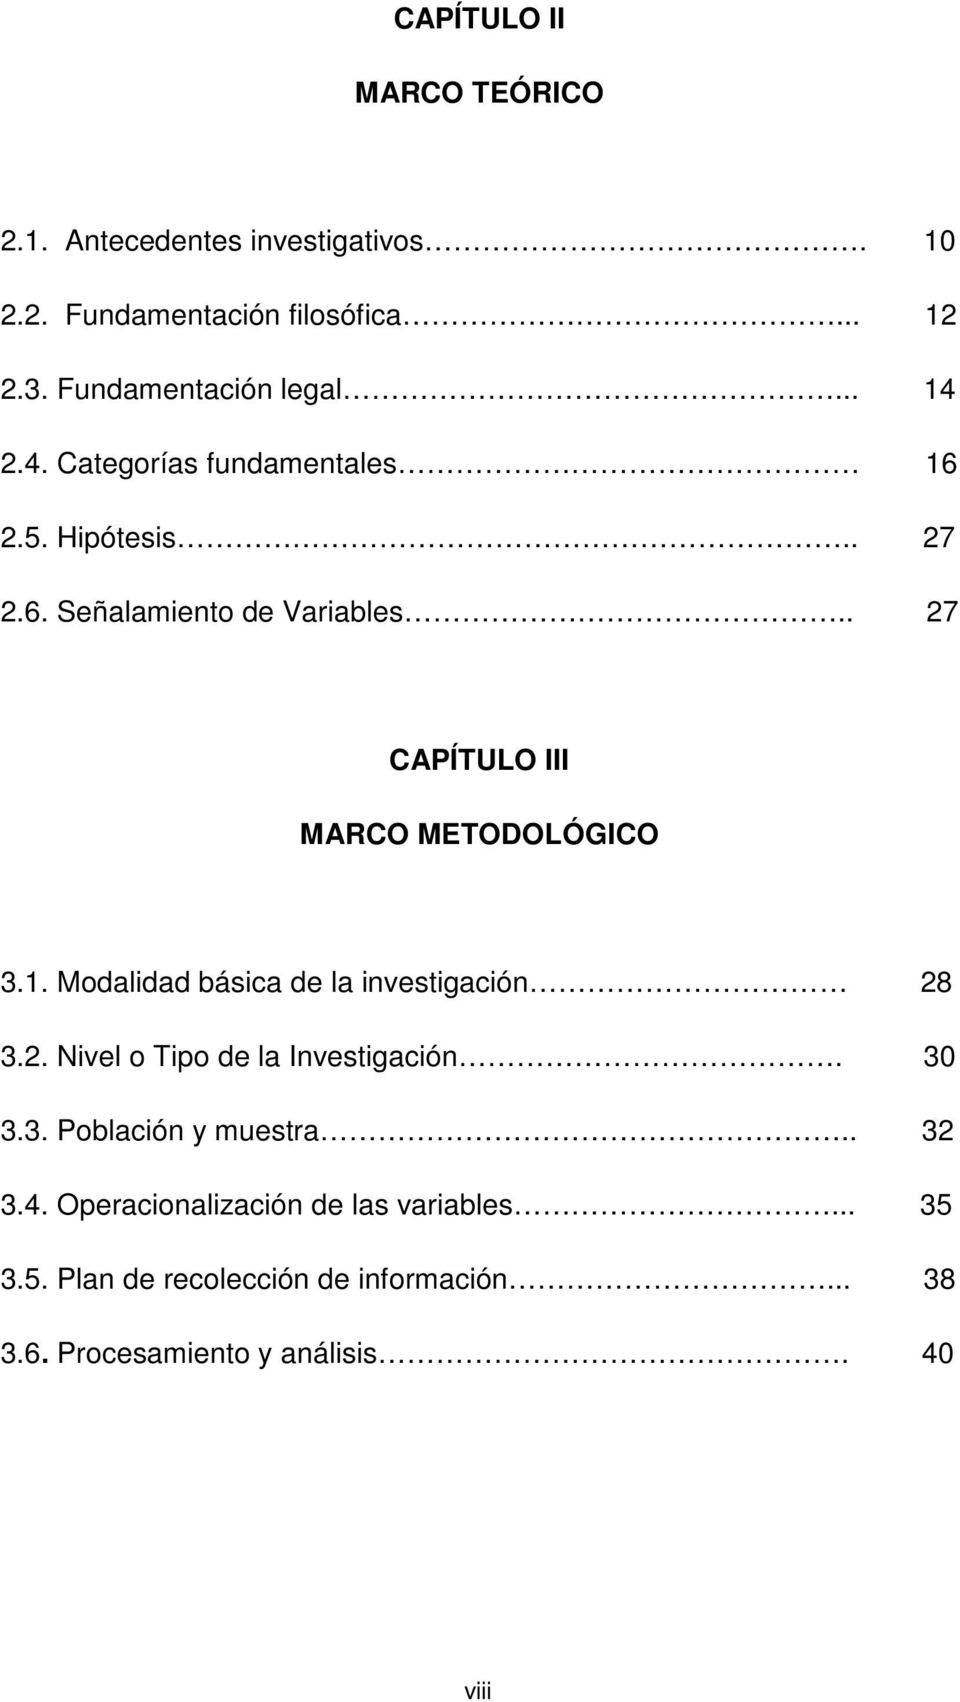 . 27 CAPÍTULO III MARCO METODOLÓGICO 3.1. Modalidad básica de la investigación 28 3.2. Nivel o Tipo de la Investigación. 30 3.